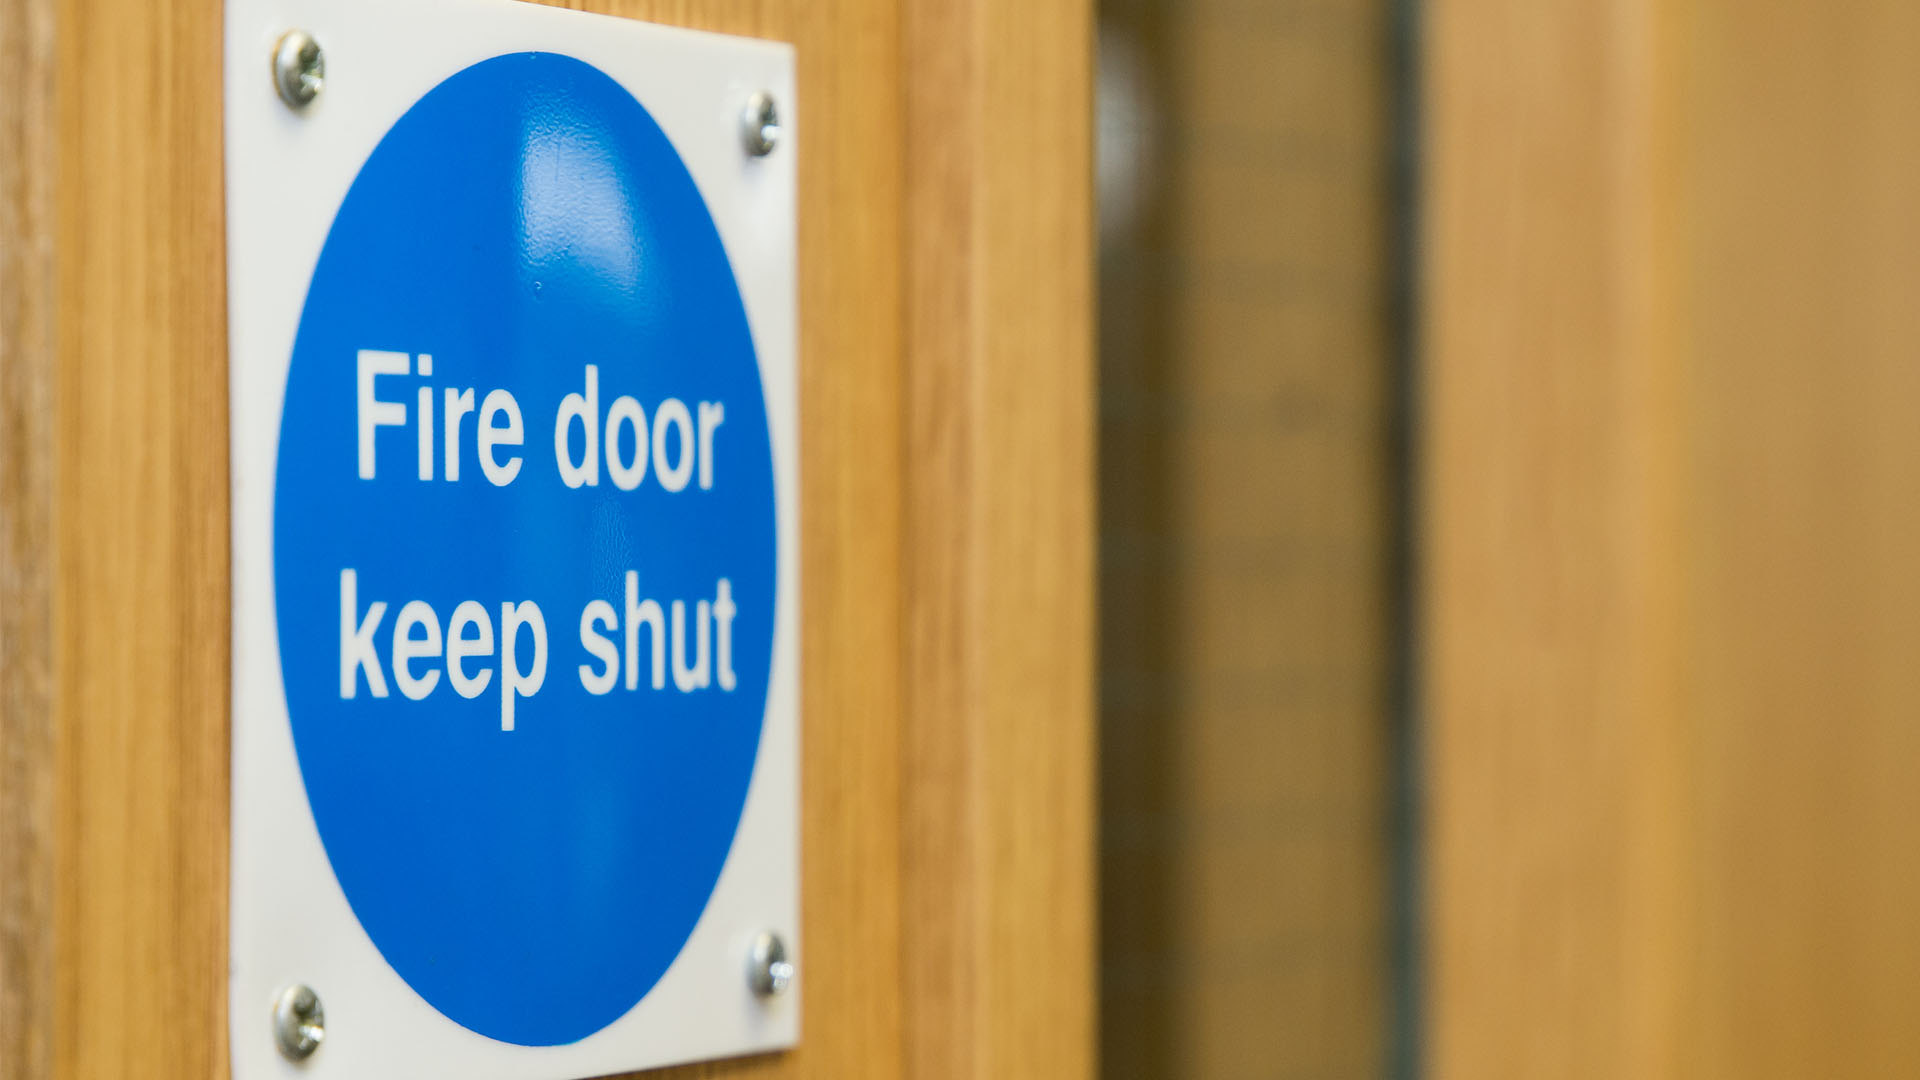 A blue fire door safety sign that says: Fire door keep shut